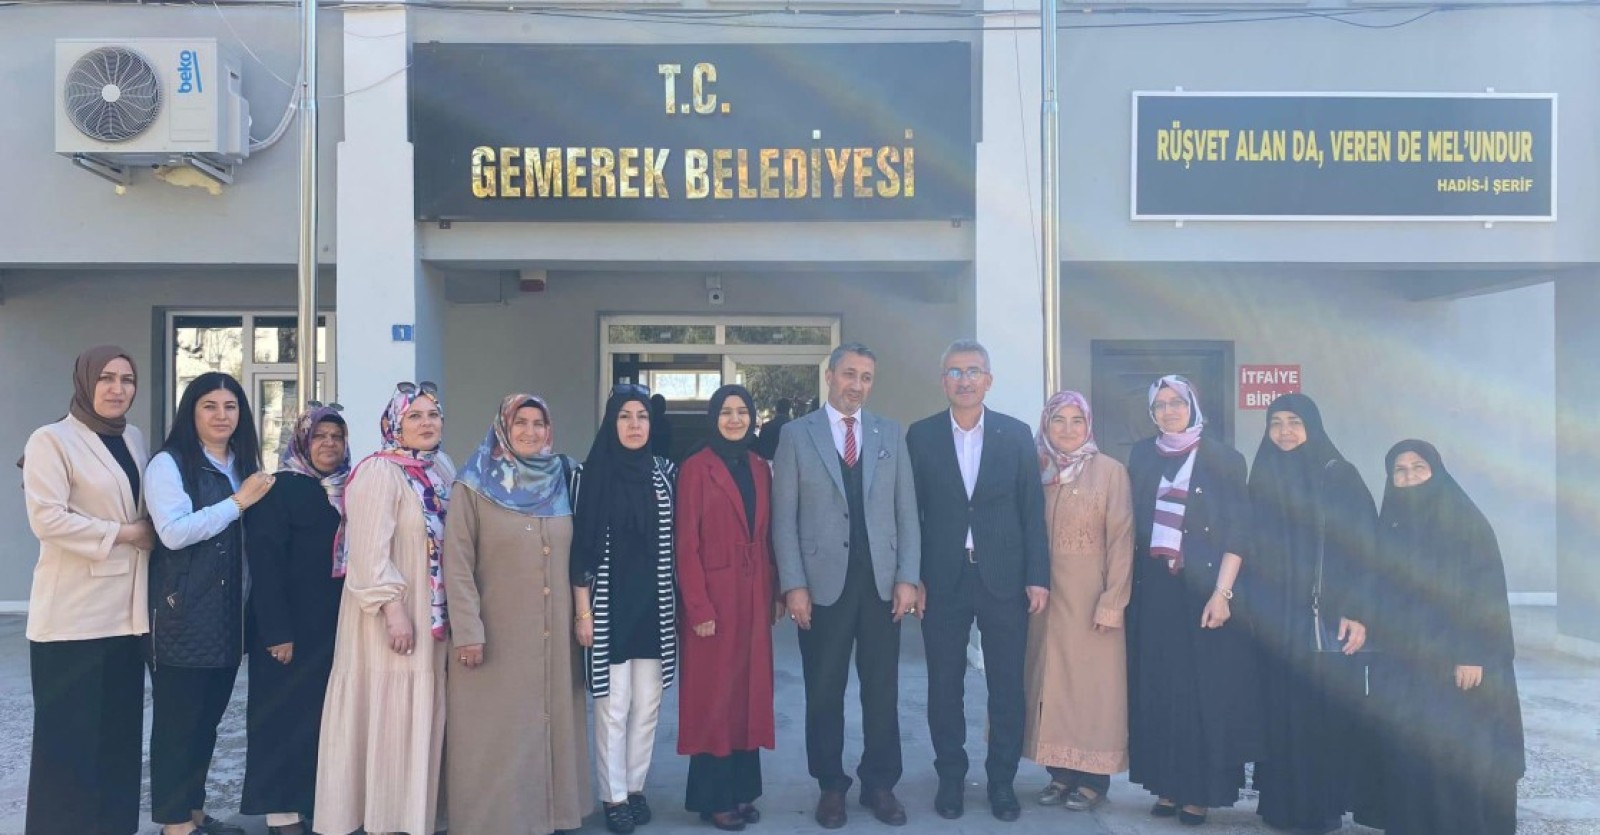 Sivas Yeniden Refah Partisi Belediye başkanı Adayı Fatih KALKAN Başkan ÇELİKTEN’İ makamında ziyaret edip hayırlı olsun ziyaretinde bulundu.